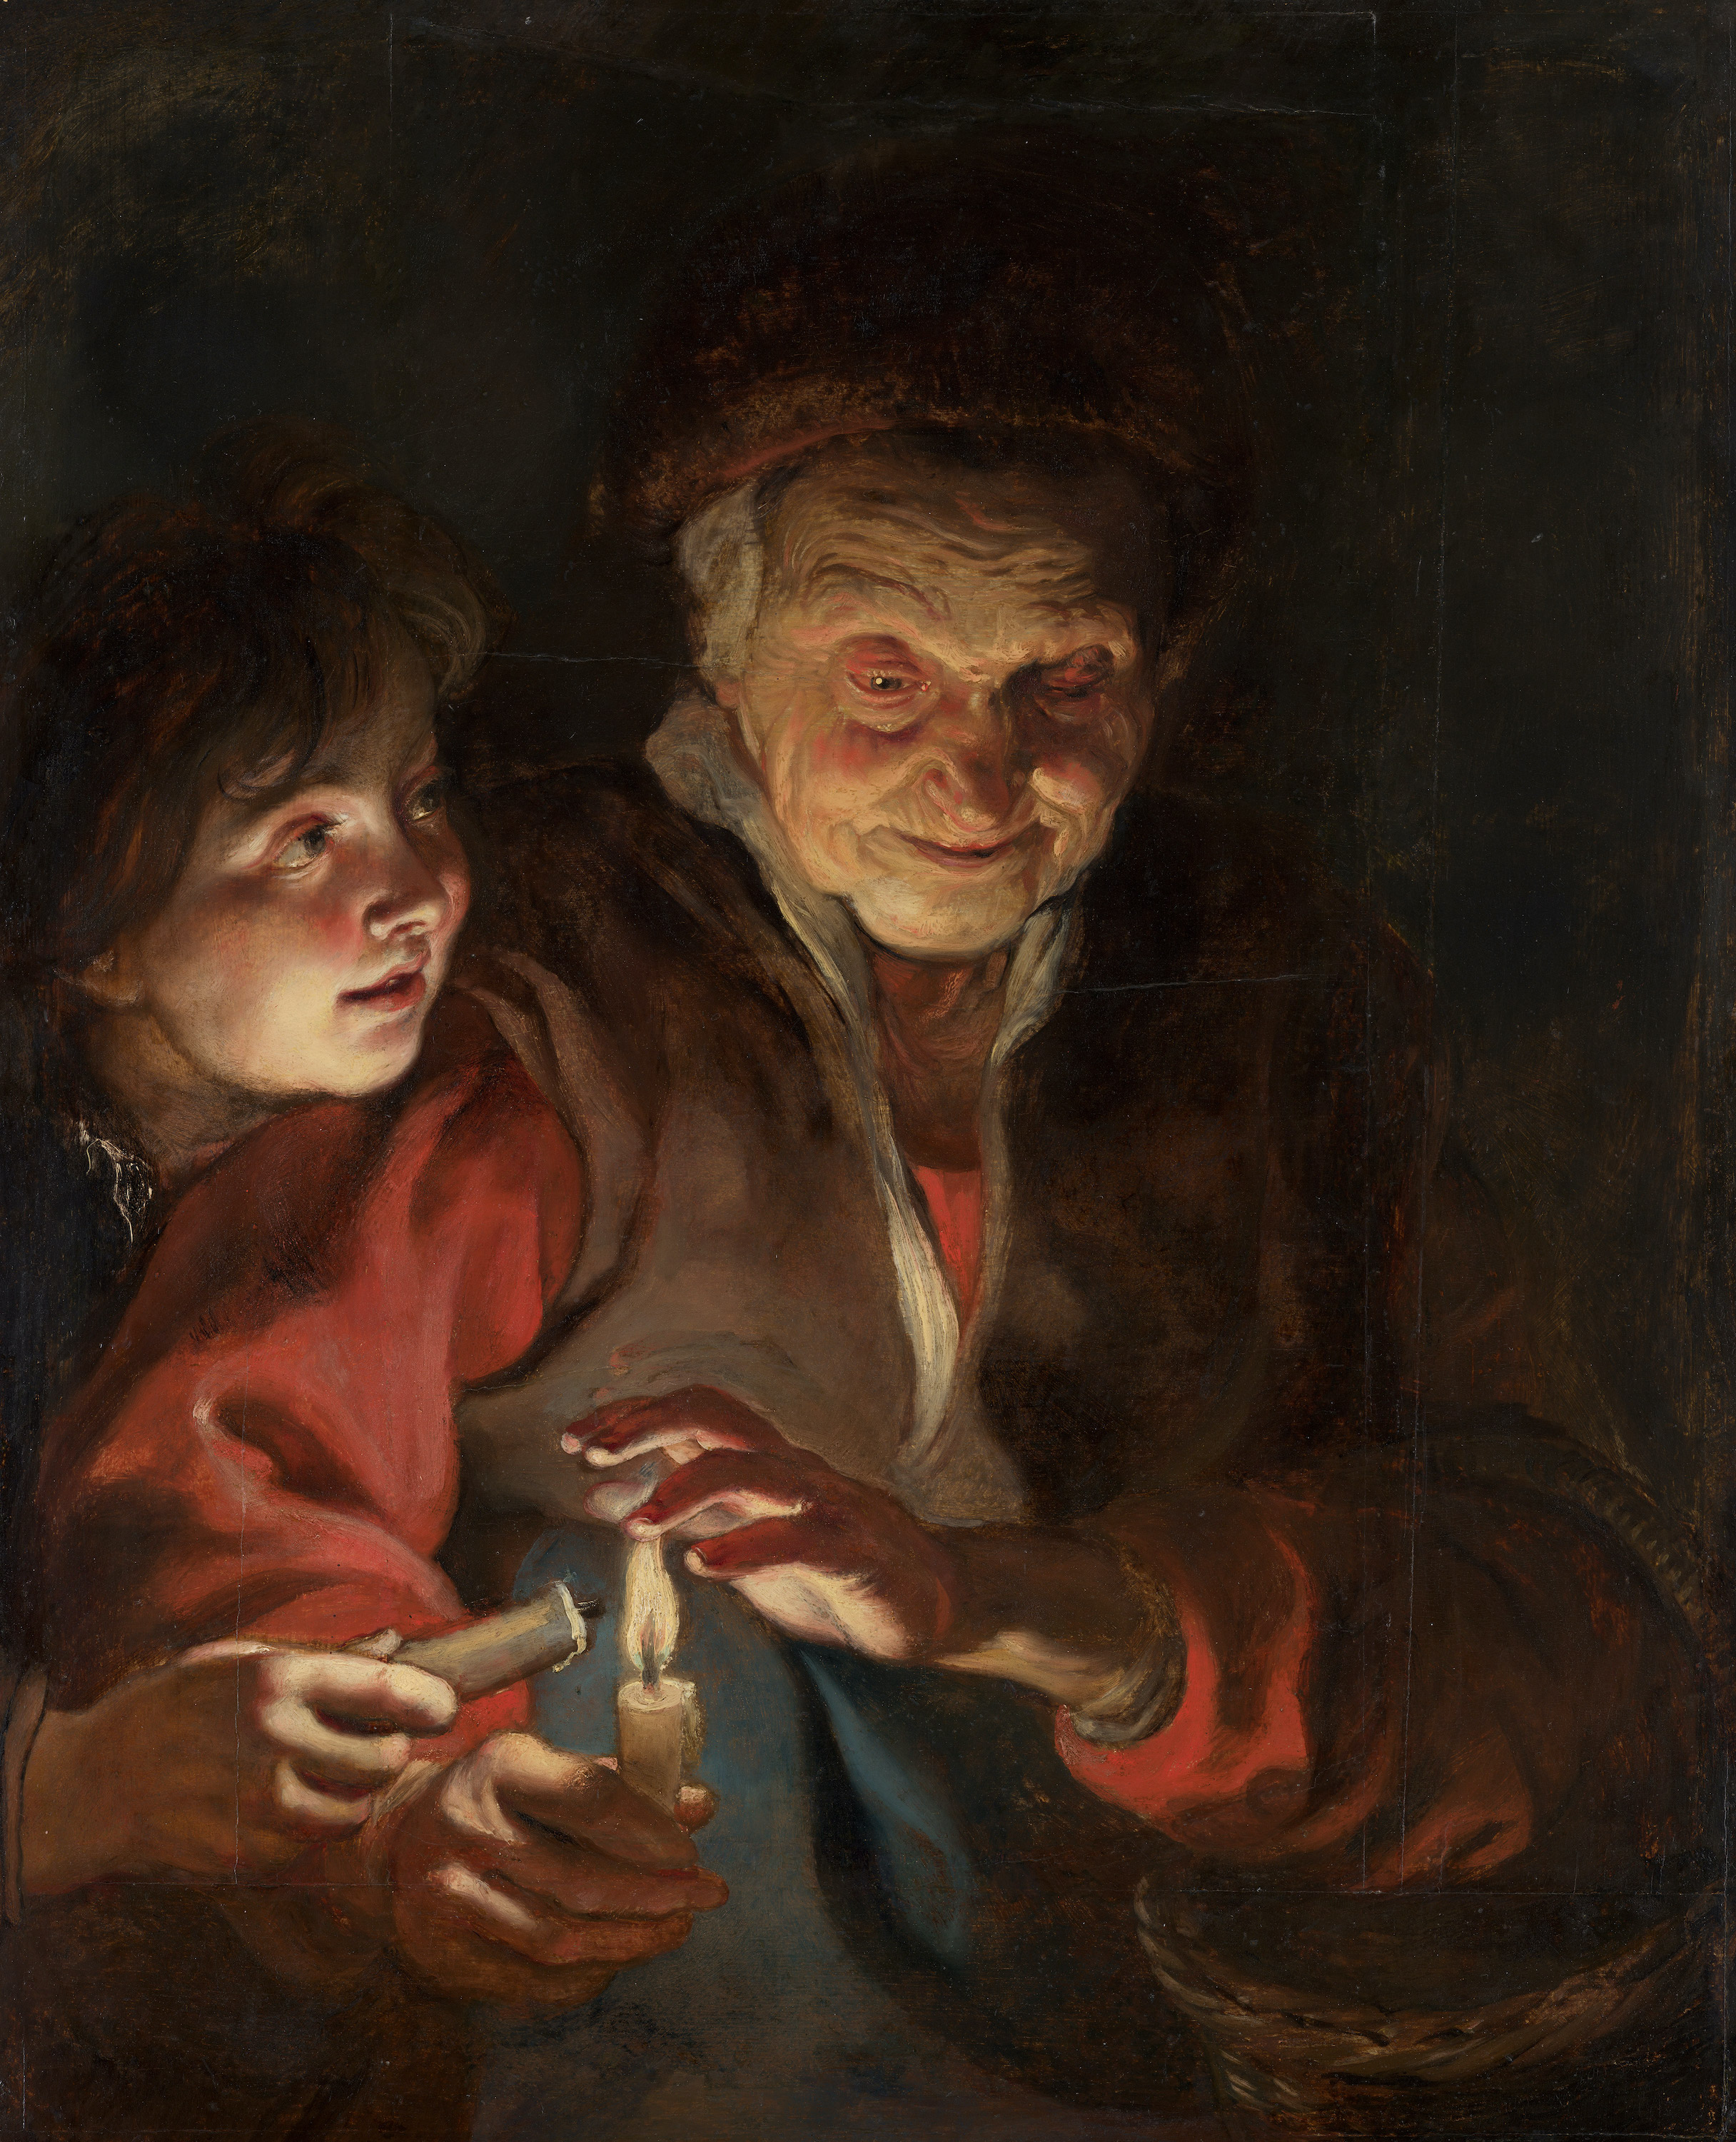 蝋燭を持つ老婆と少年 by Peter Paul Rubens - 1616 - 1617年頃 - 77 x 62.5 cm 